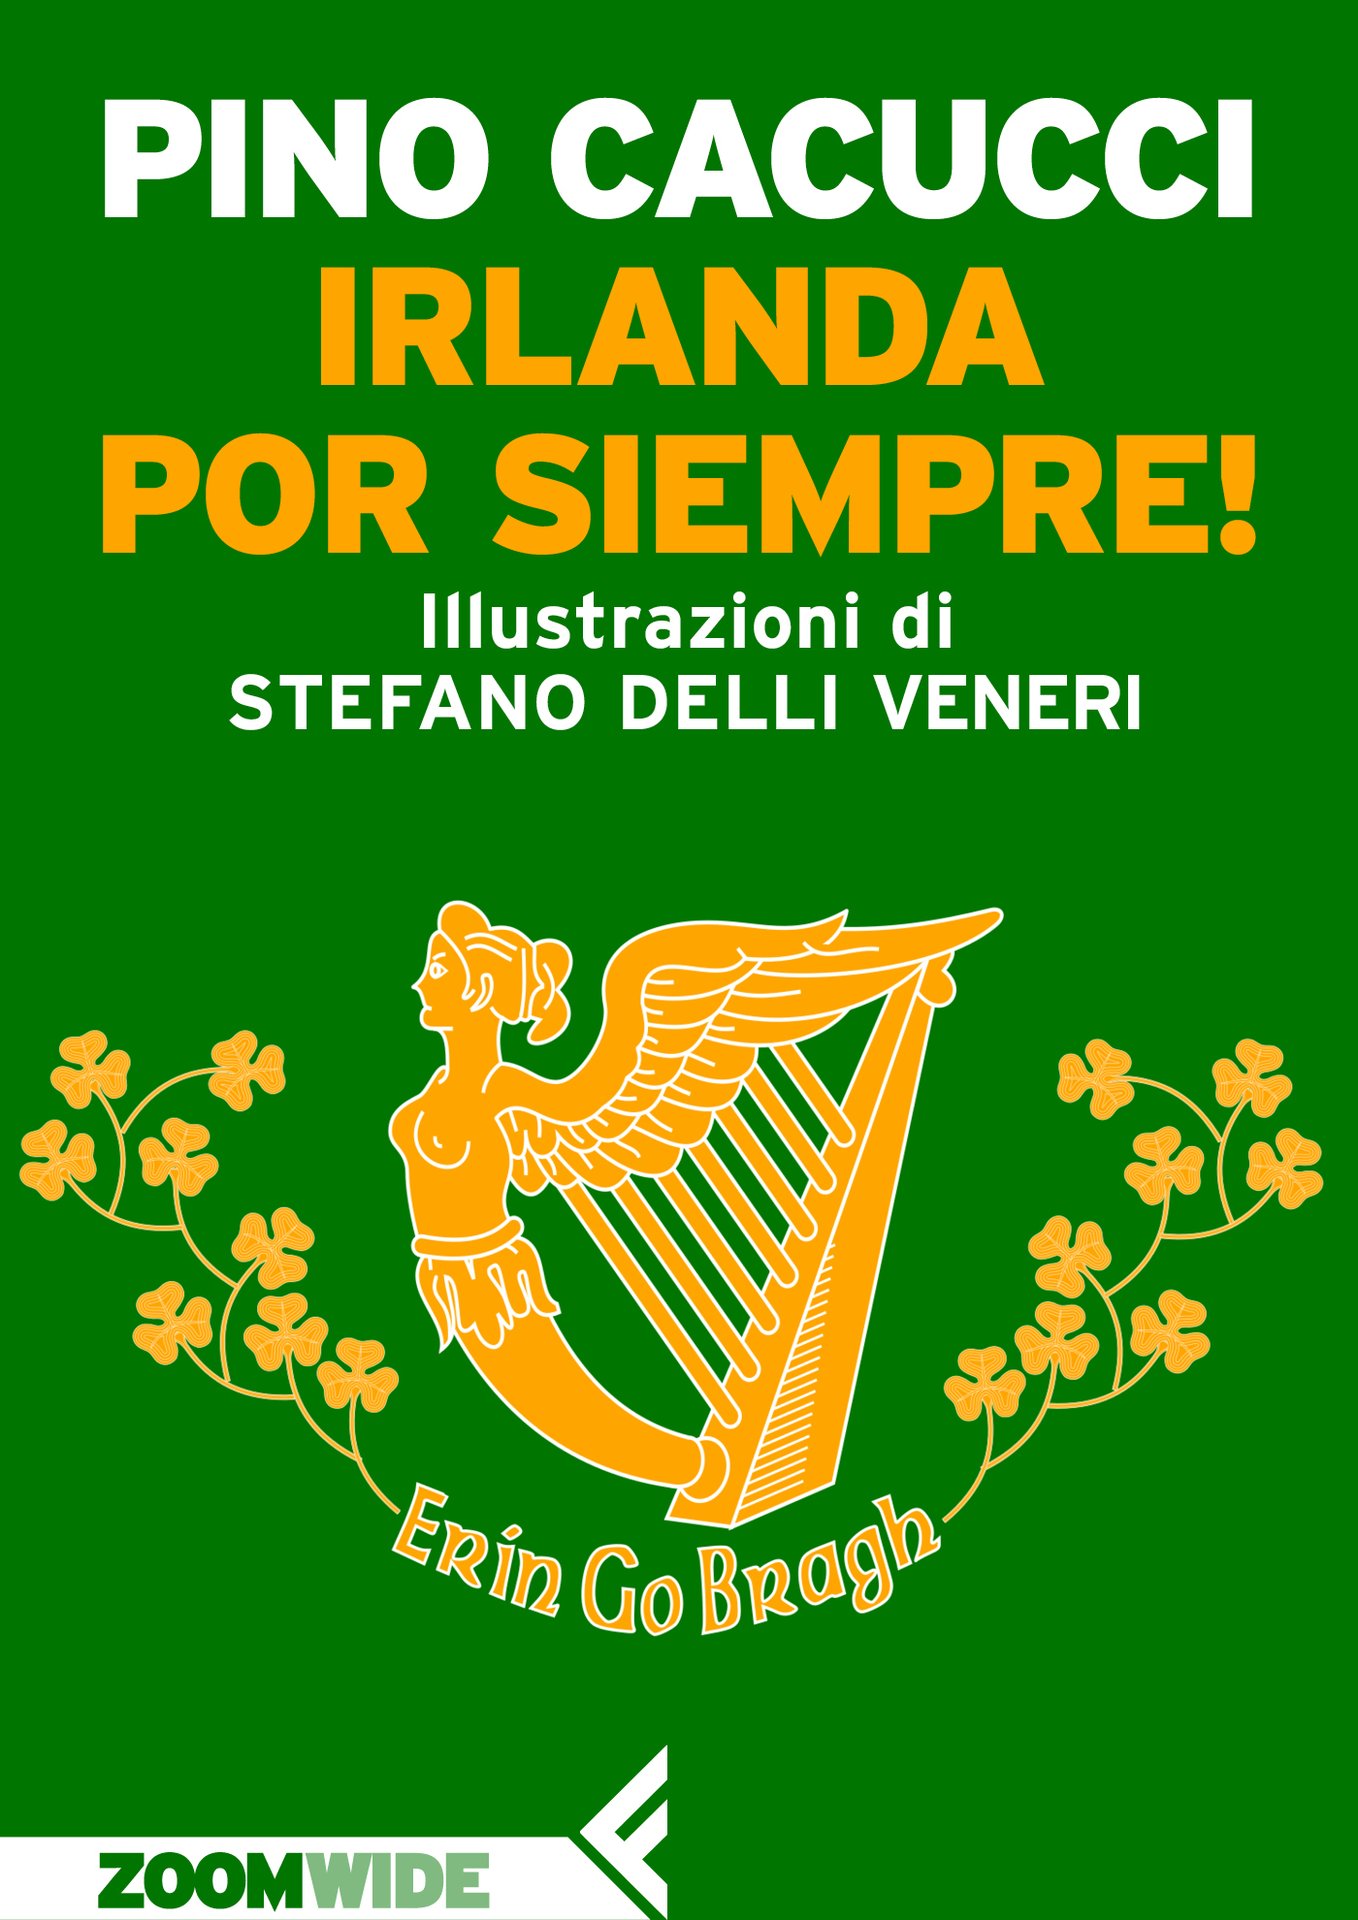 Irlanda por siempre!